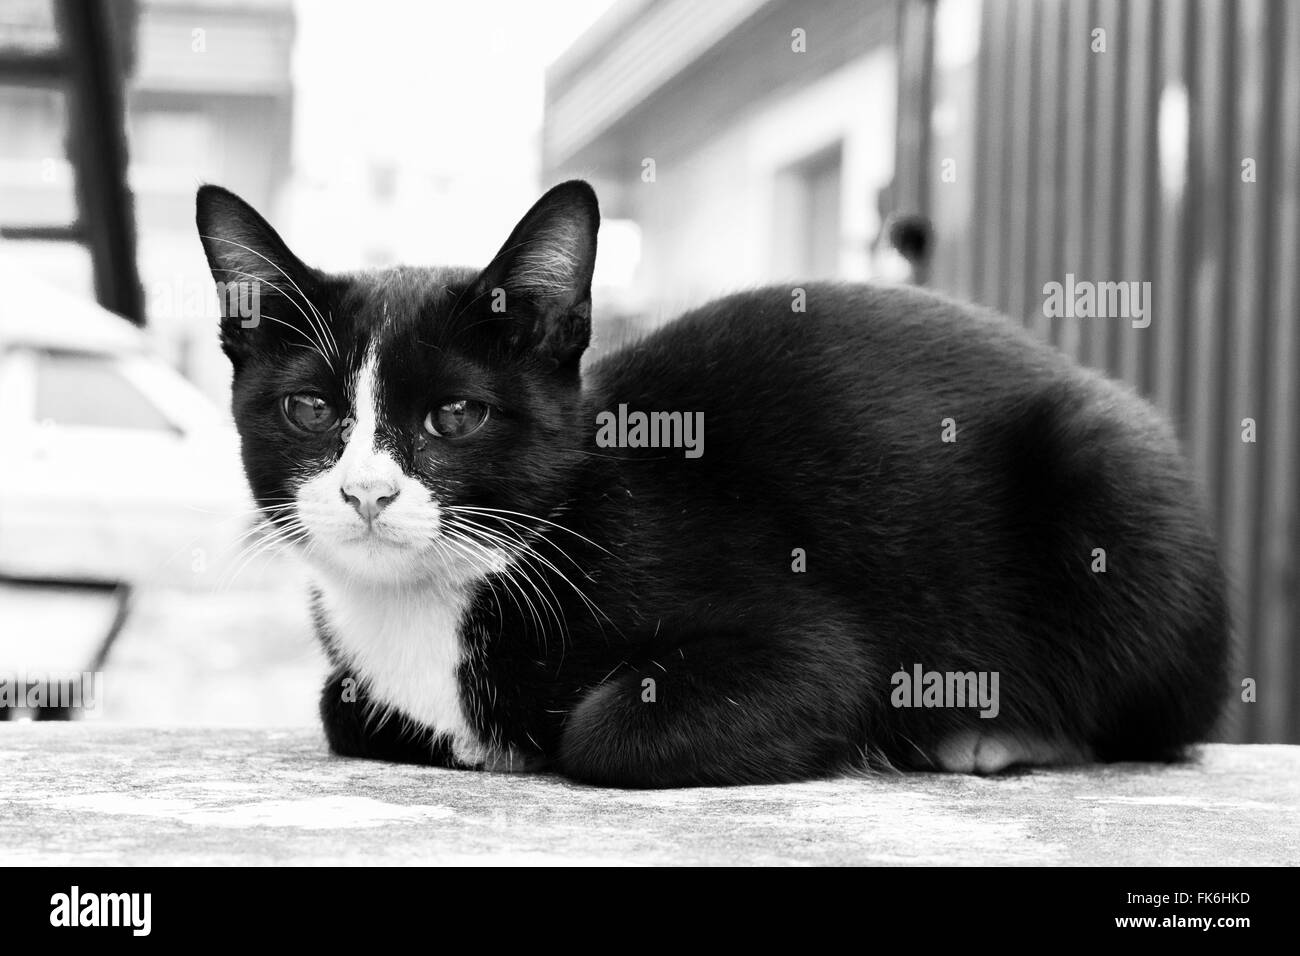 Cat sit rannicchiato sul pavimento di cemento. Foto Stock